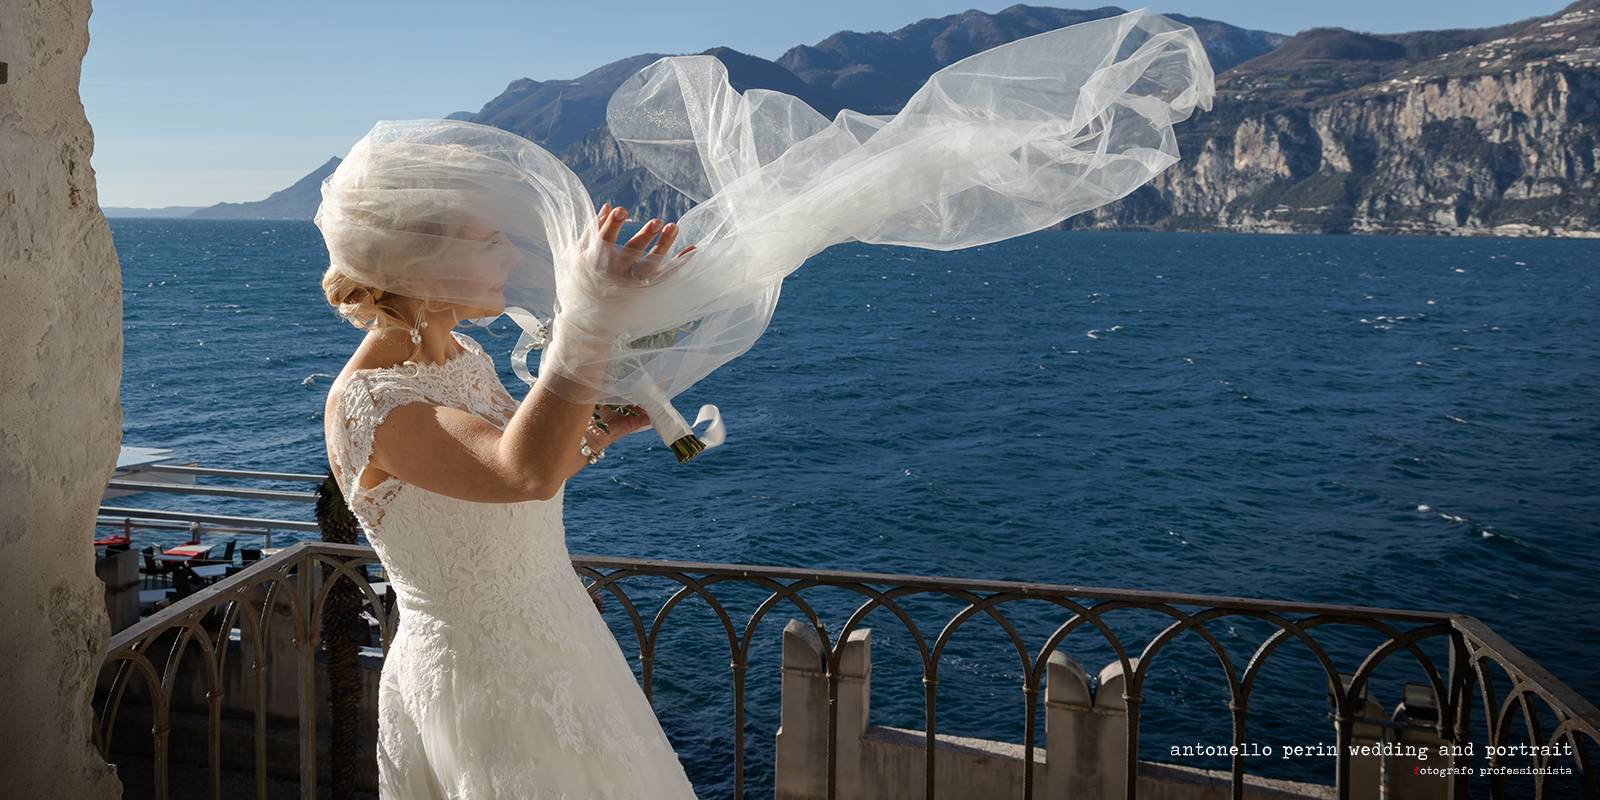 WEDDING PHOTOGRAPHER IN MALCESINE